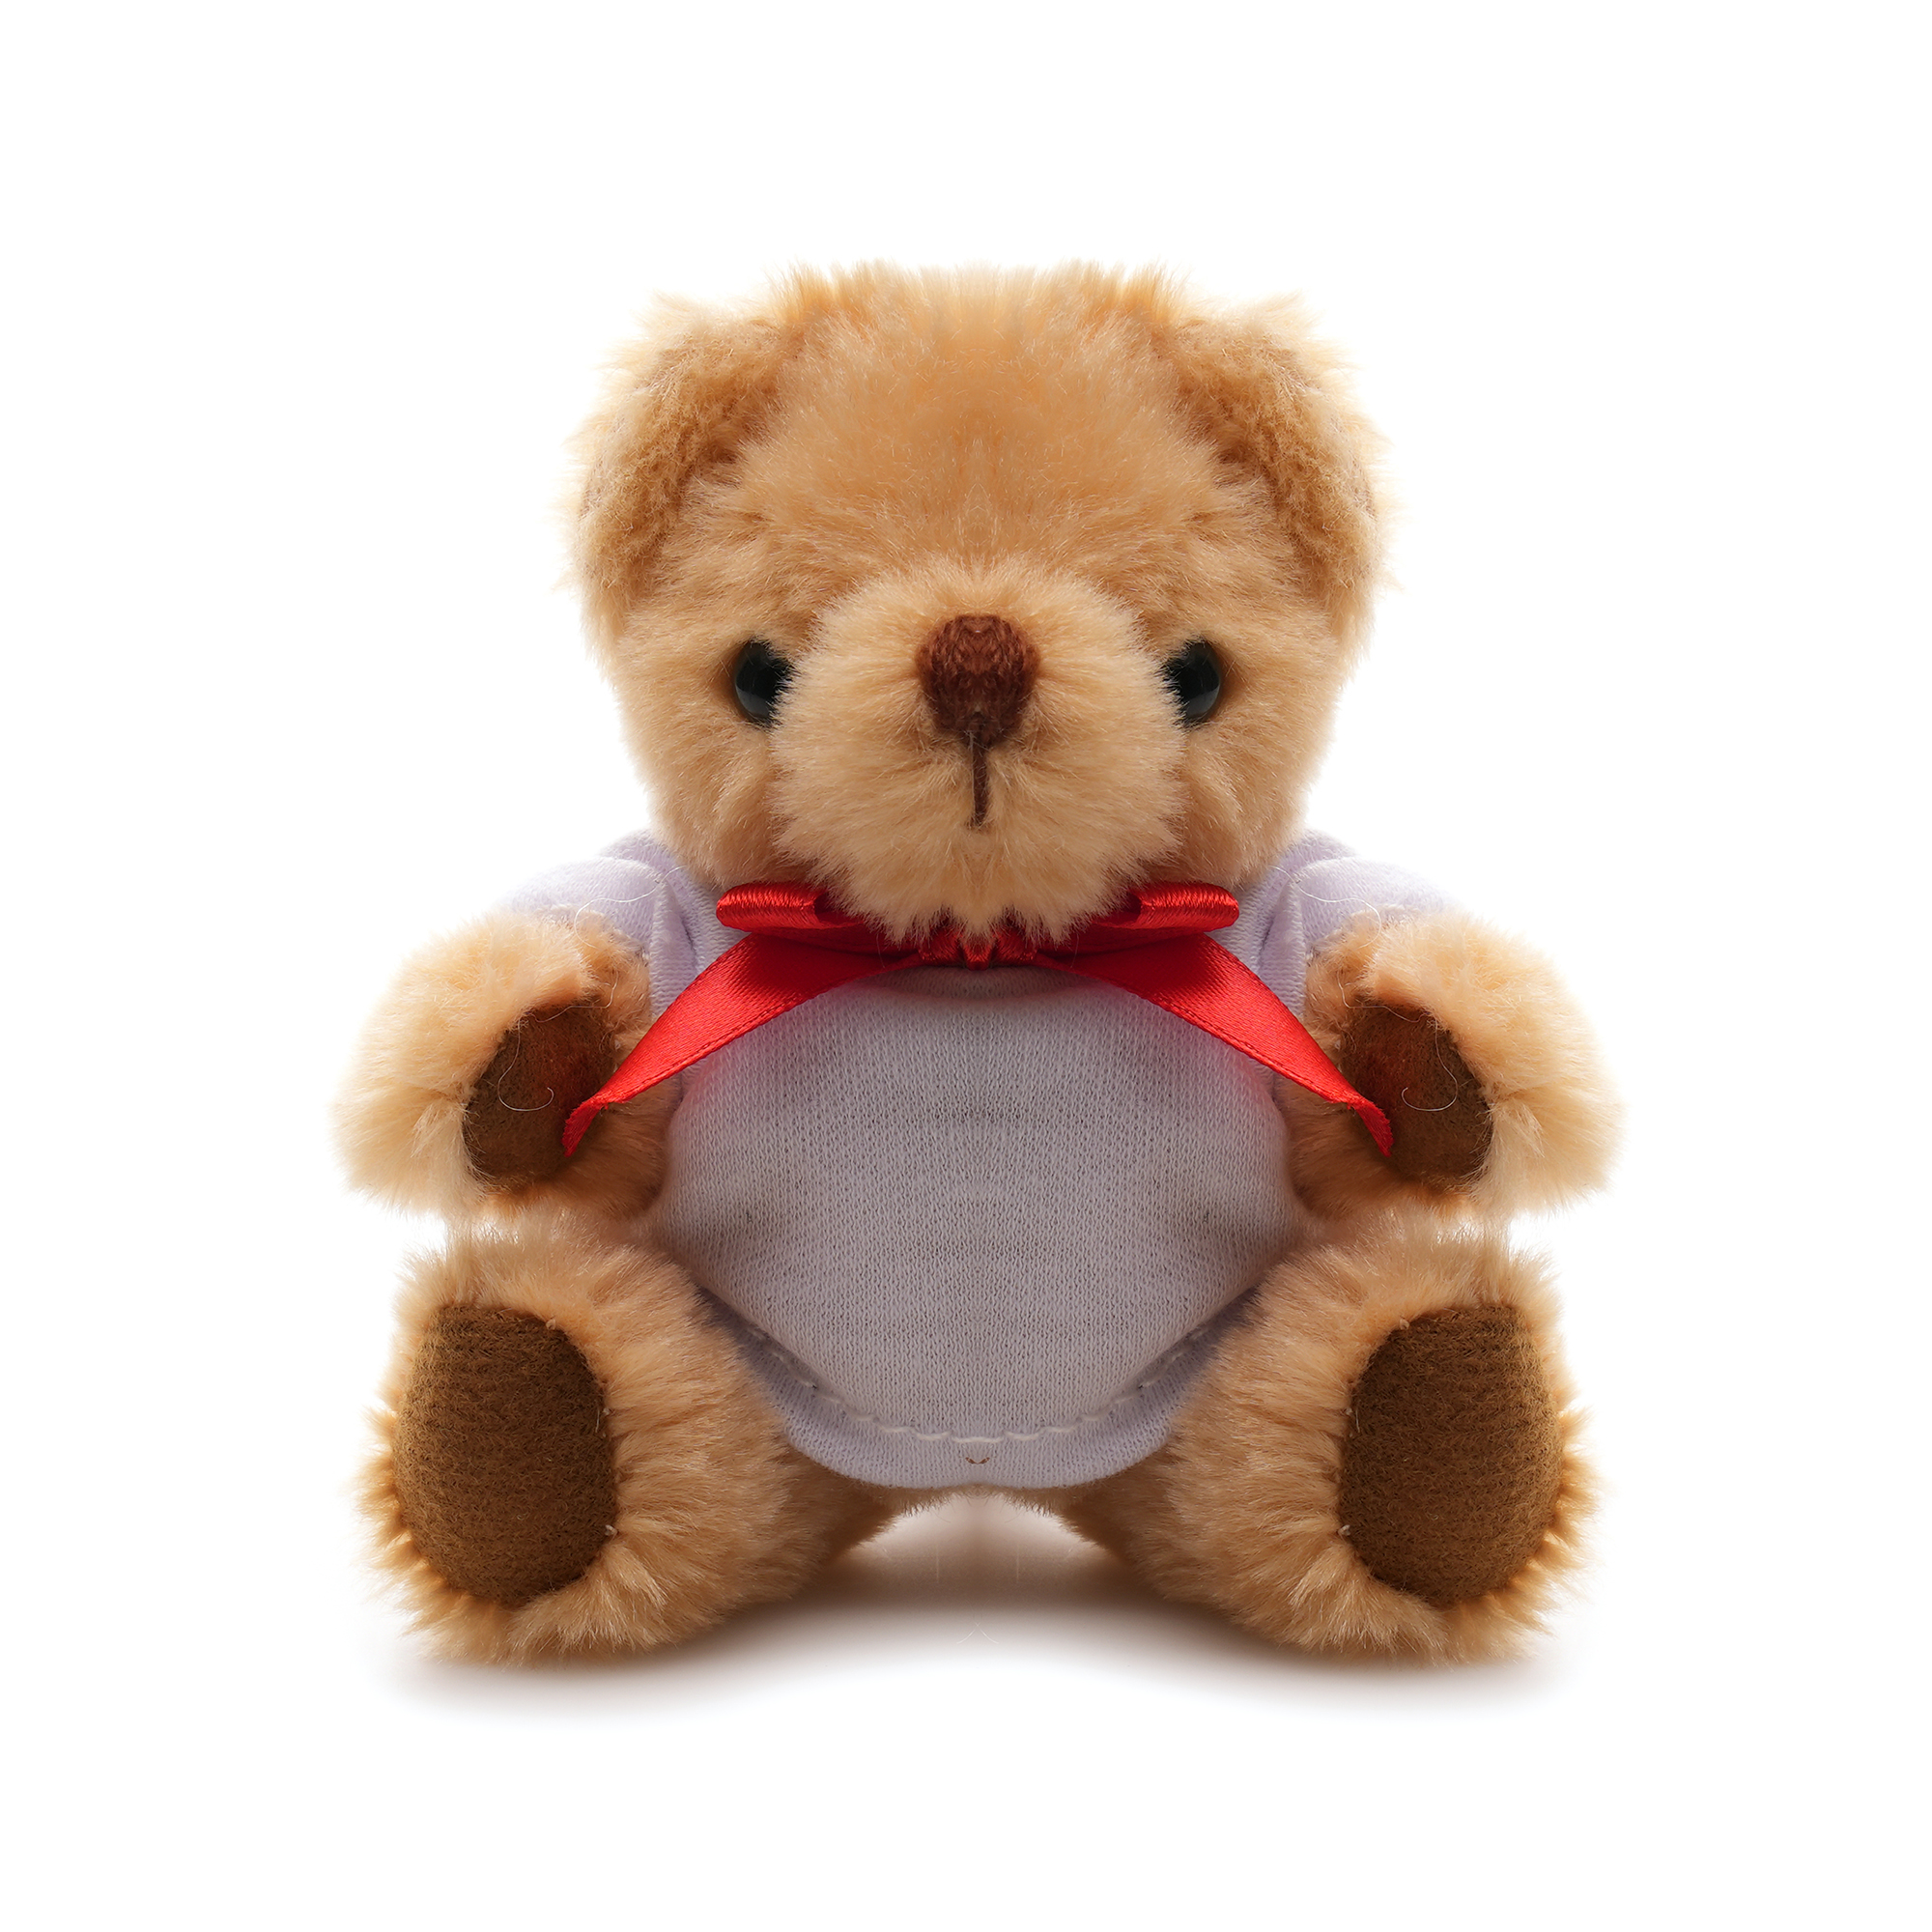 TB0004 2 - Tuffy 13cm Teddy Bear